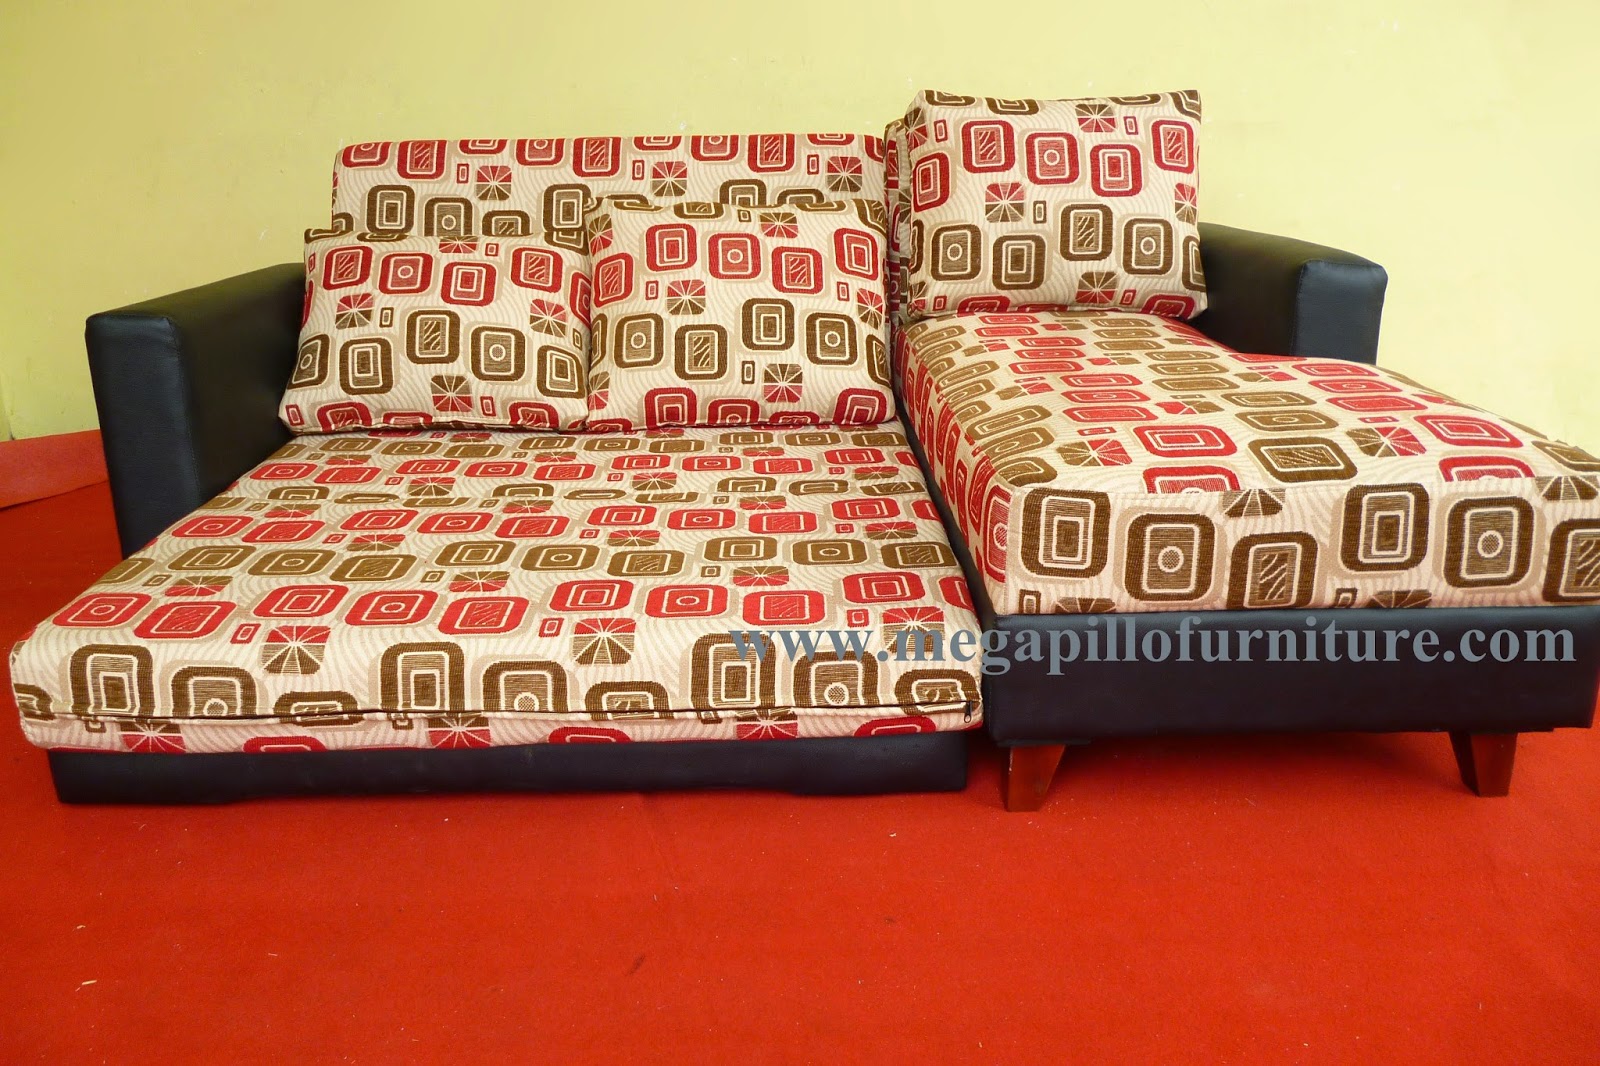 Megapillo Furniture & Spring Bed Online Shop: Sofa Bed 